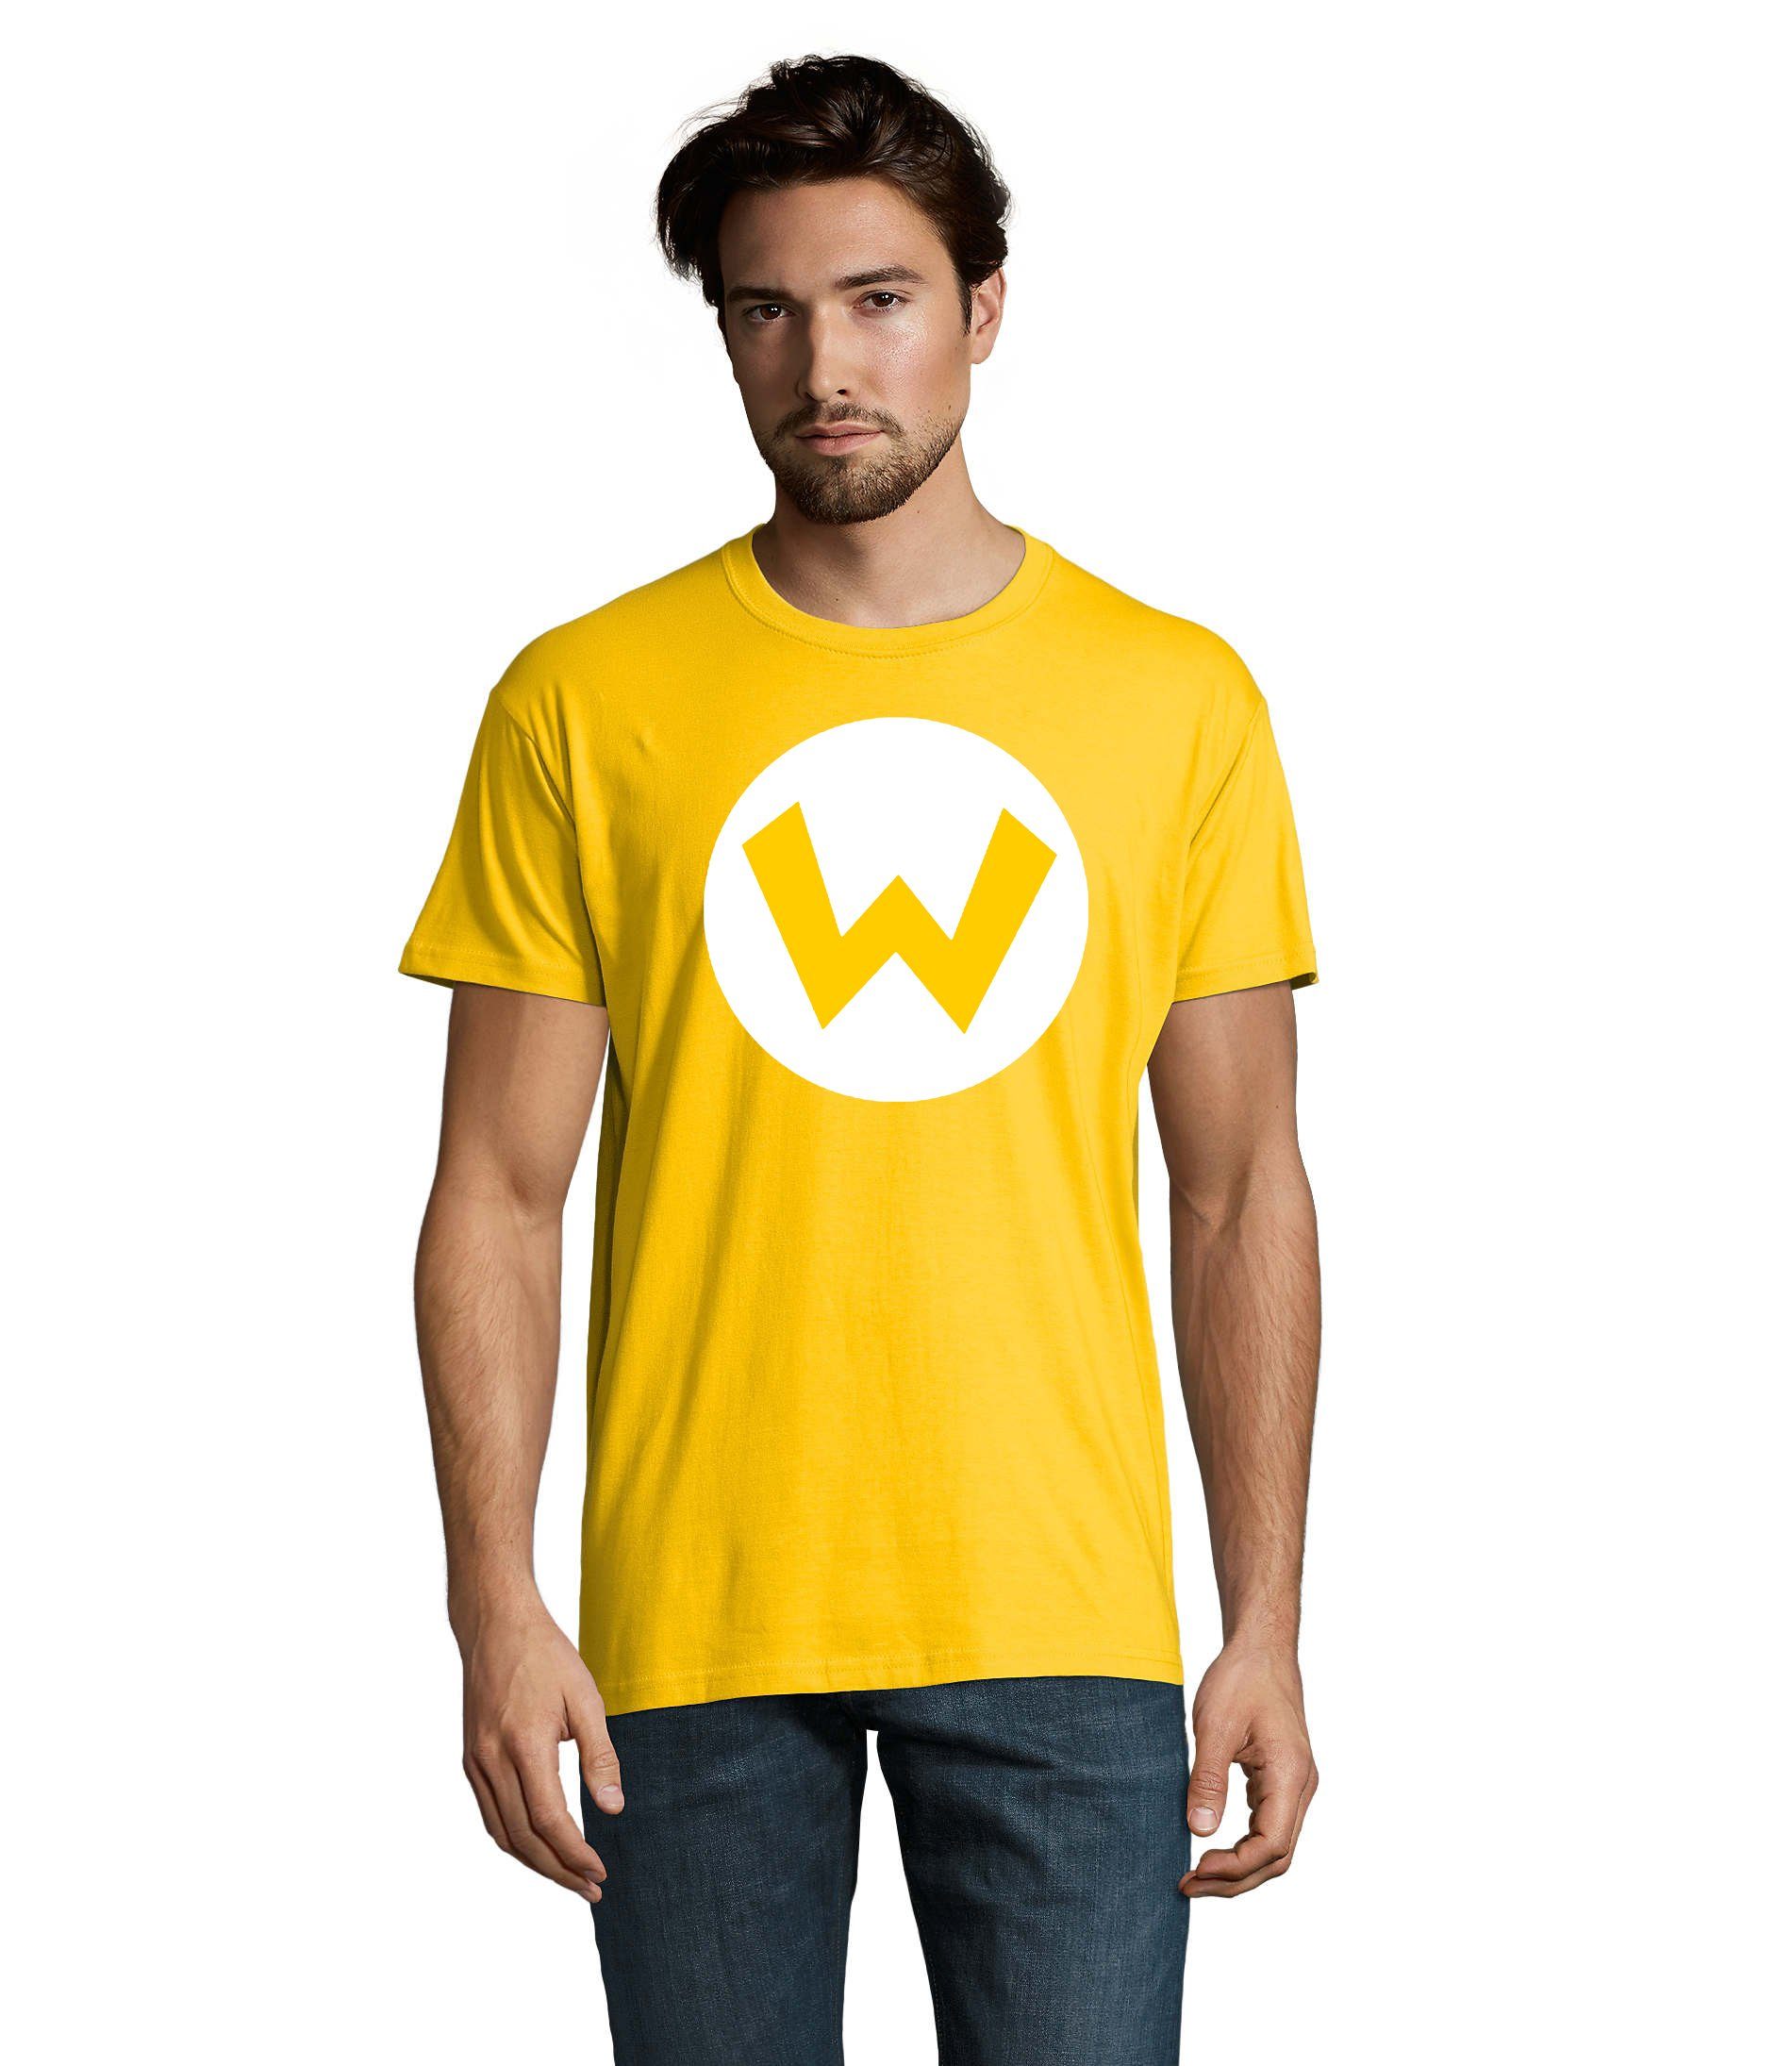 Logo Shirt Wario Herren & Blondie T-Shirt Luigi Brownie Mario Luigi Nintendo (Gelb) Yoshi Gaming